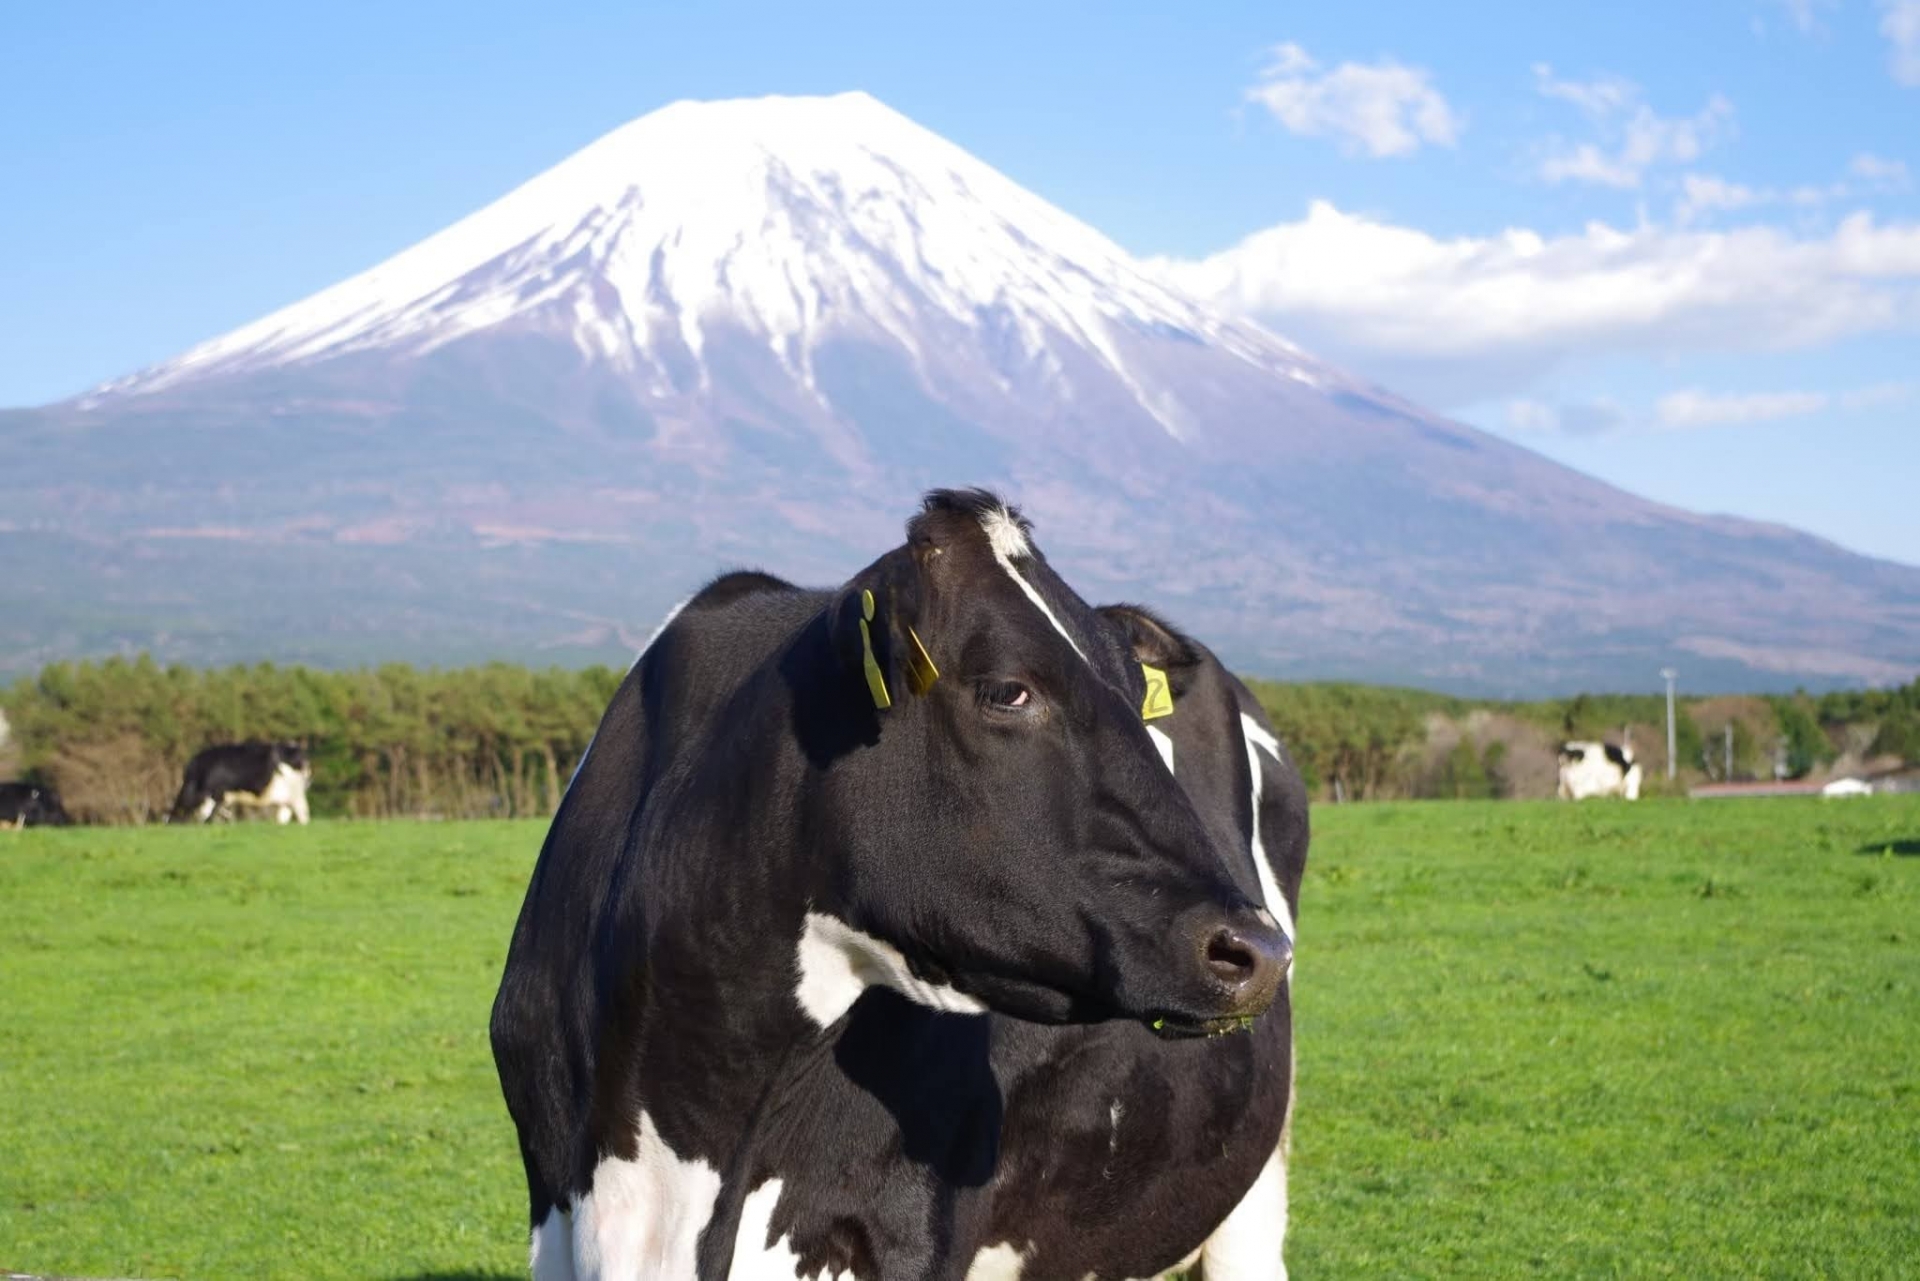 雪印メグミルク神奈川海老名工場:牛乳パックが出来る工場見学を堪能